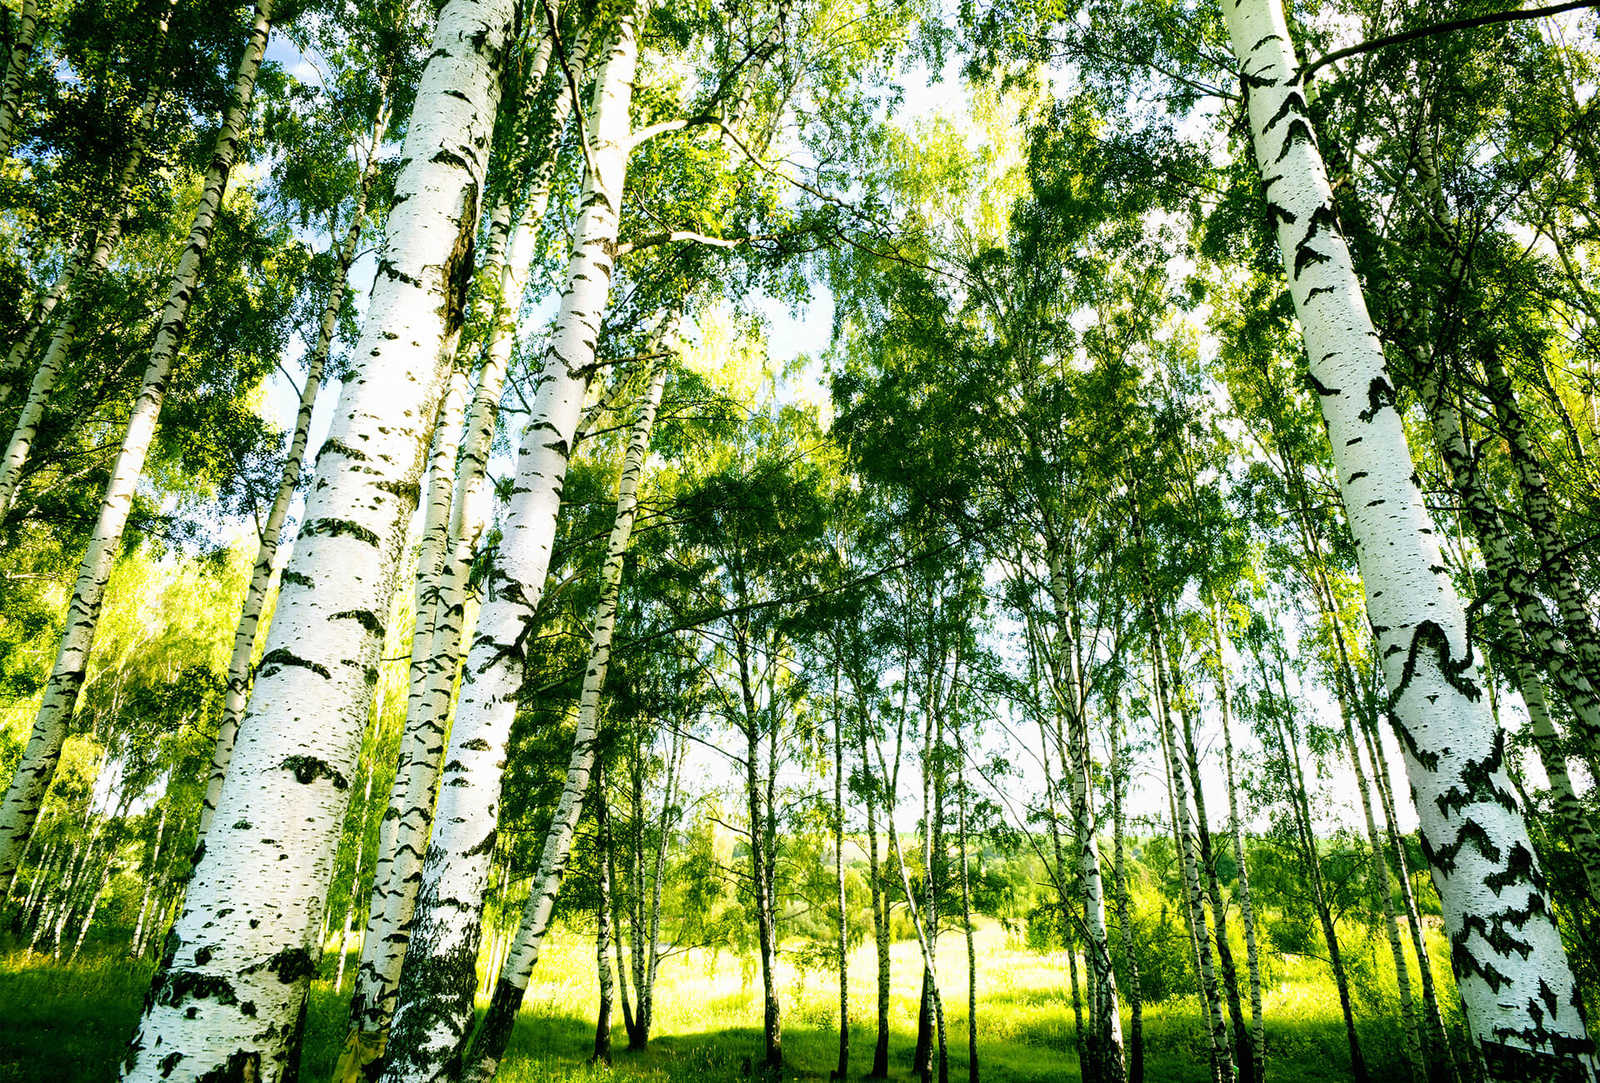         Fototapete Birkenwald im Sonnenschein – Grün, Weiß
    